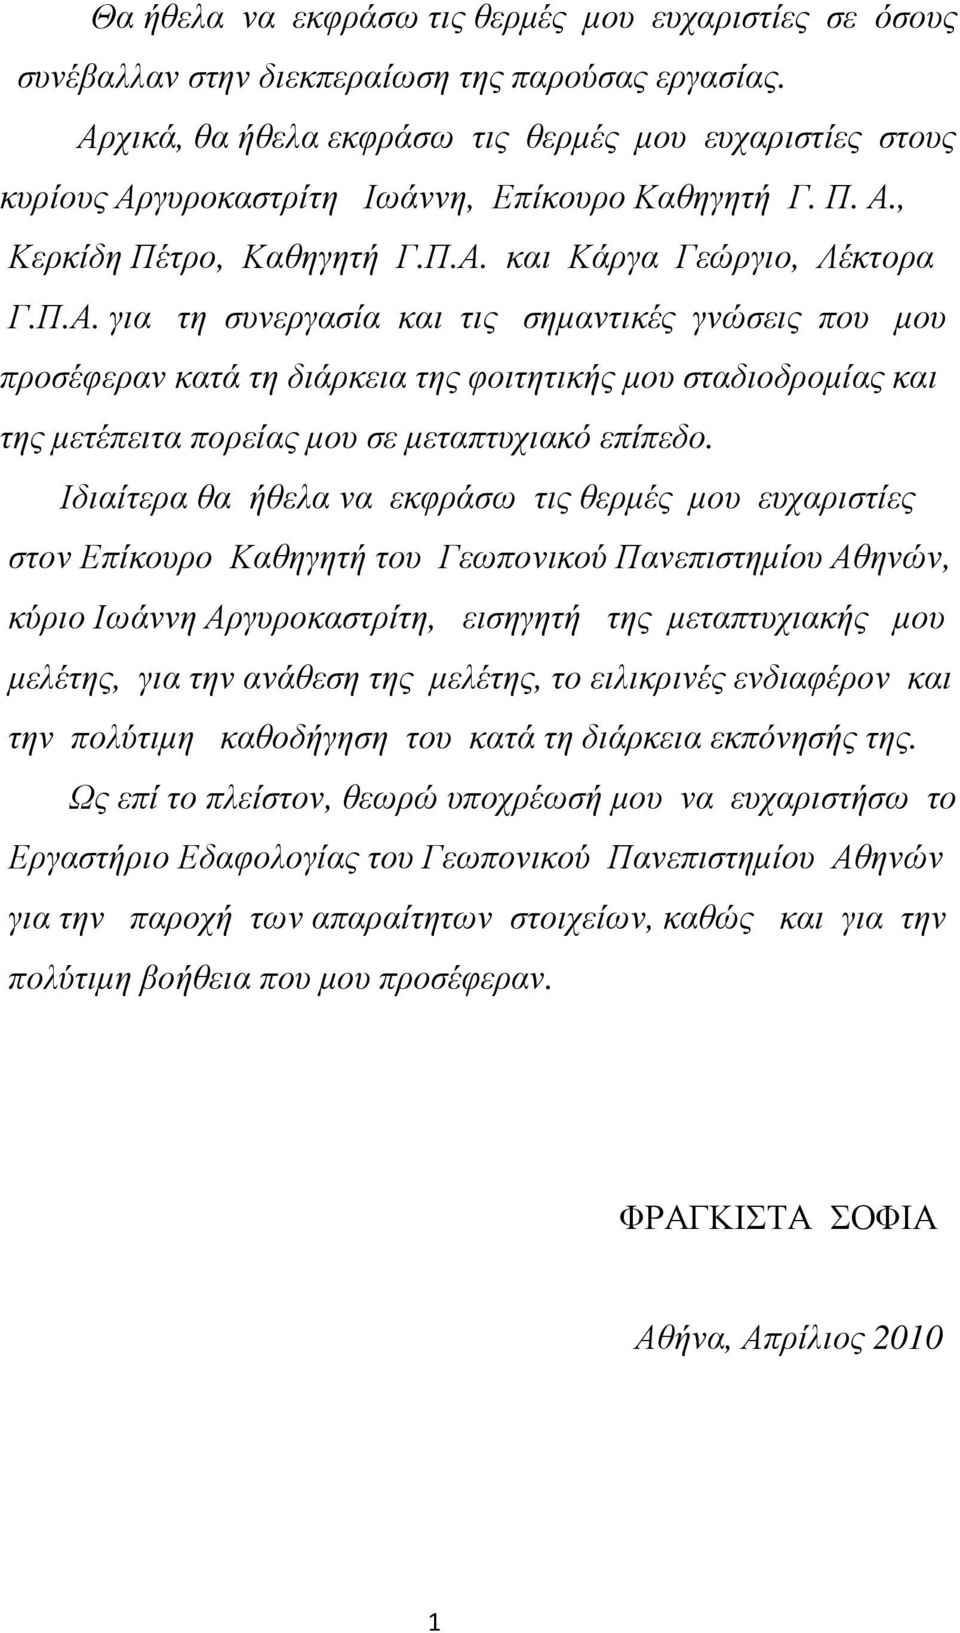 Ιδιαίτερα θα ήθελα να εκφράσω τις θερµές µου ευχαριστίες στον Επίκουρο Καθηγητή του Γεωπονικού Πανεπιστηµίου Αθηνών, κύριο Ιωάννη Αργυροκαστρίτη, εισηγητή της µεταπτυχιακής µου µελέτης, για την